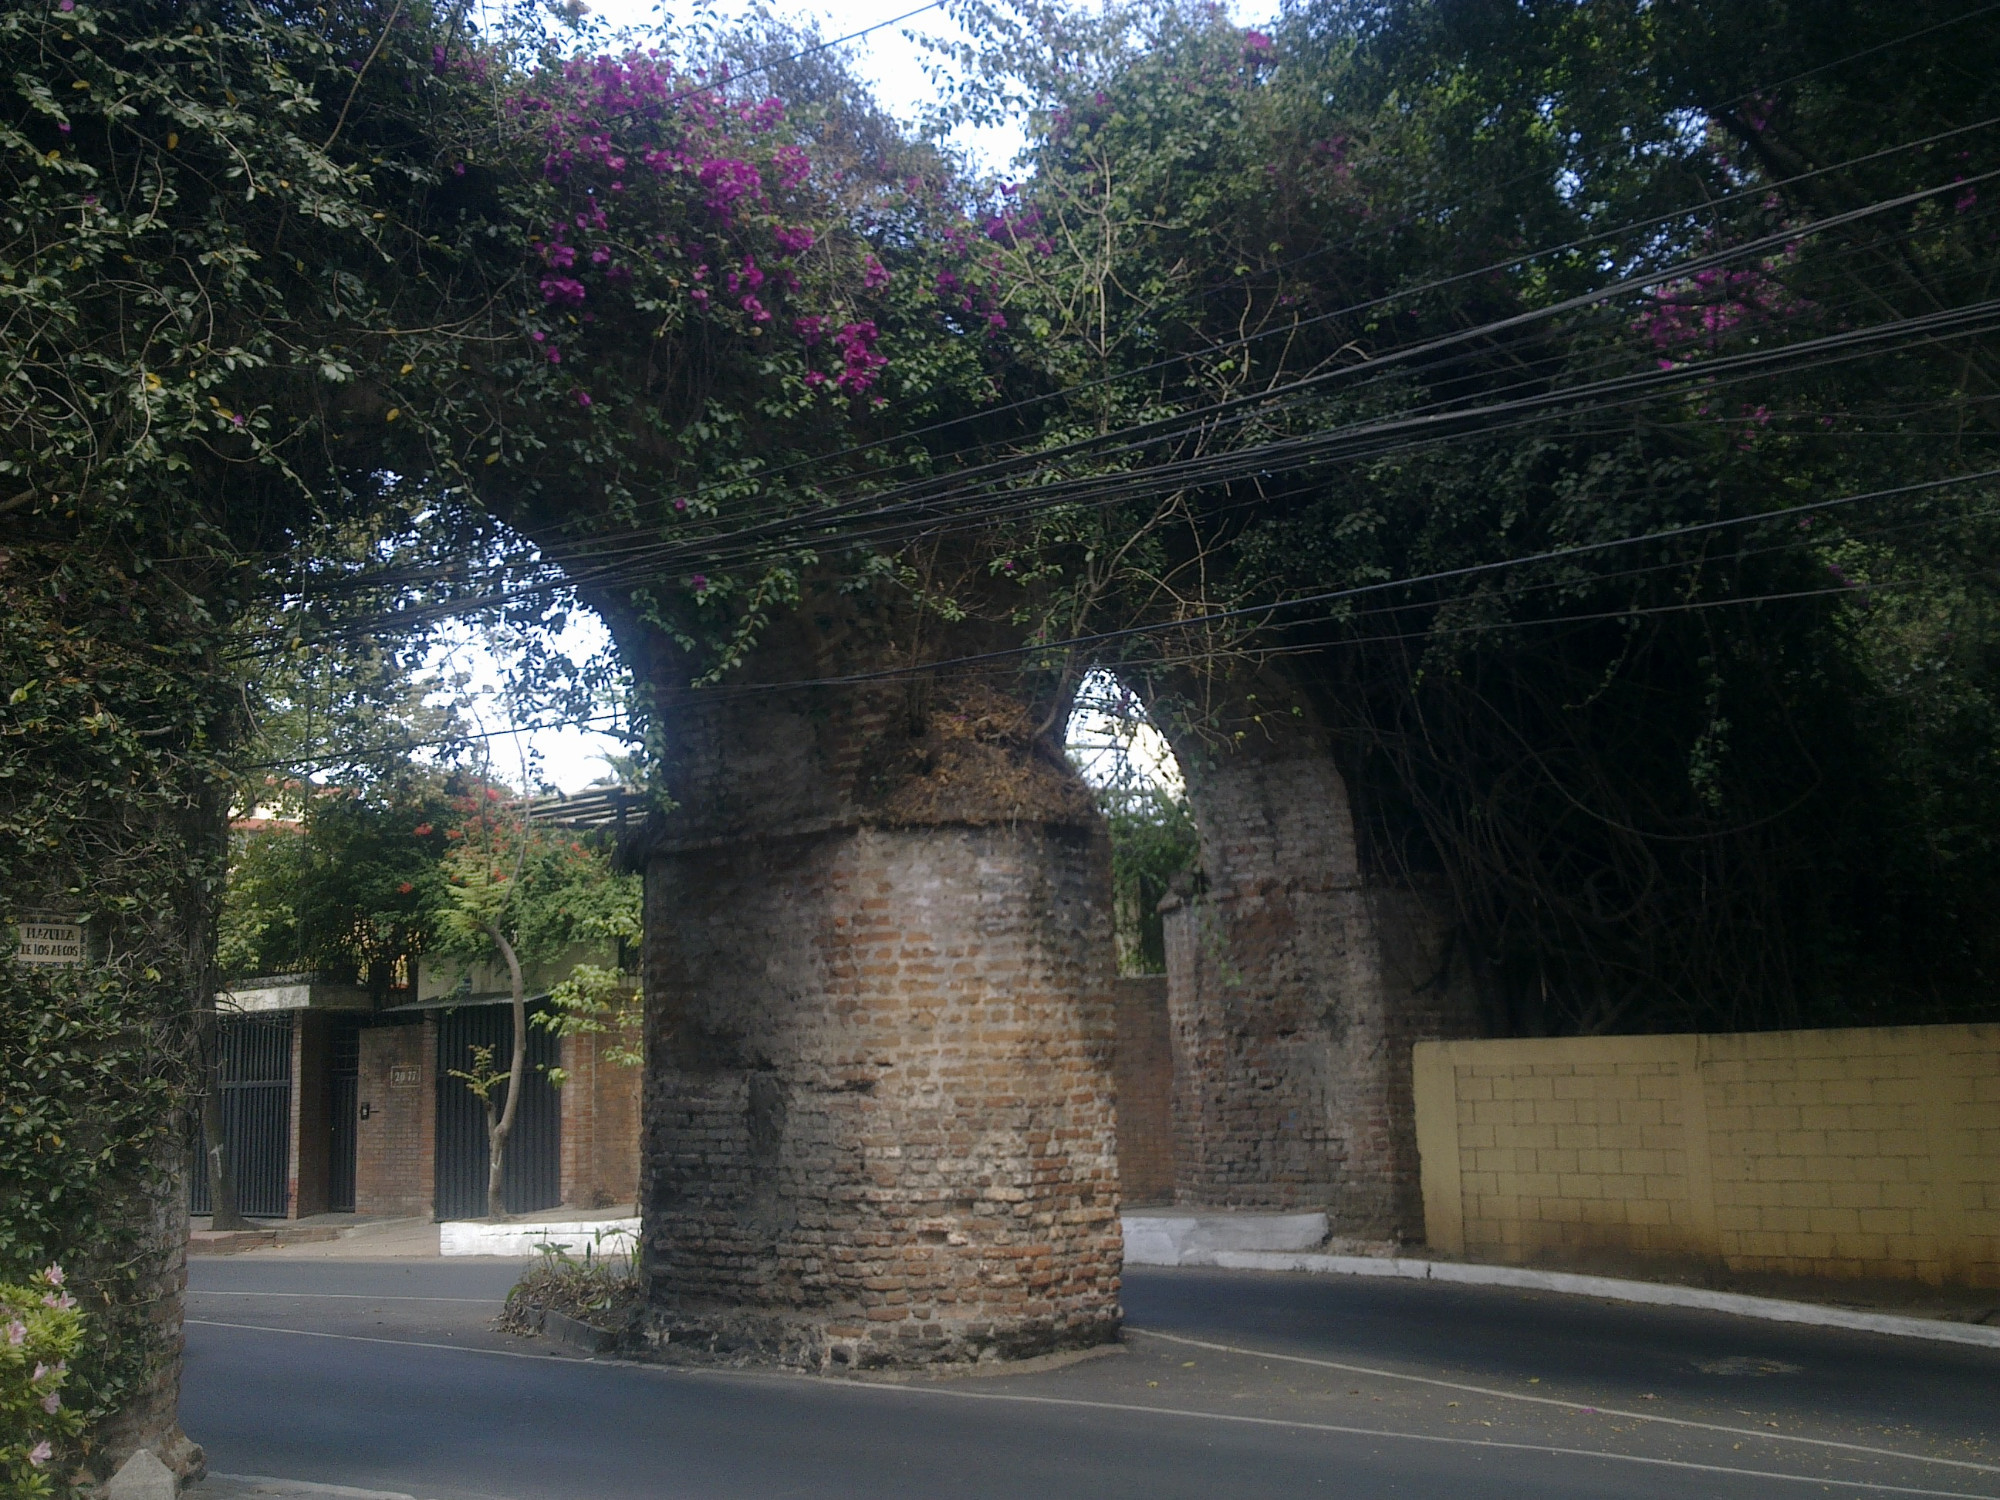 Plazuela De Los Arcos (Guatemala City)